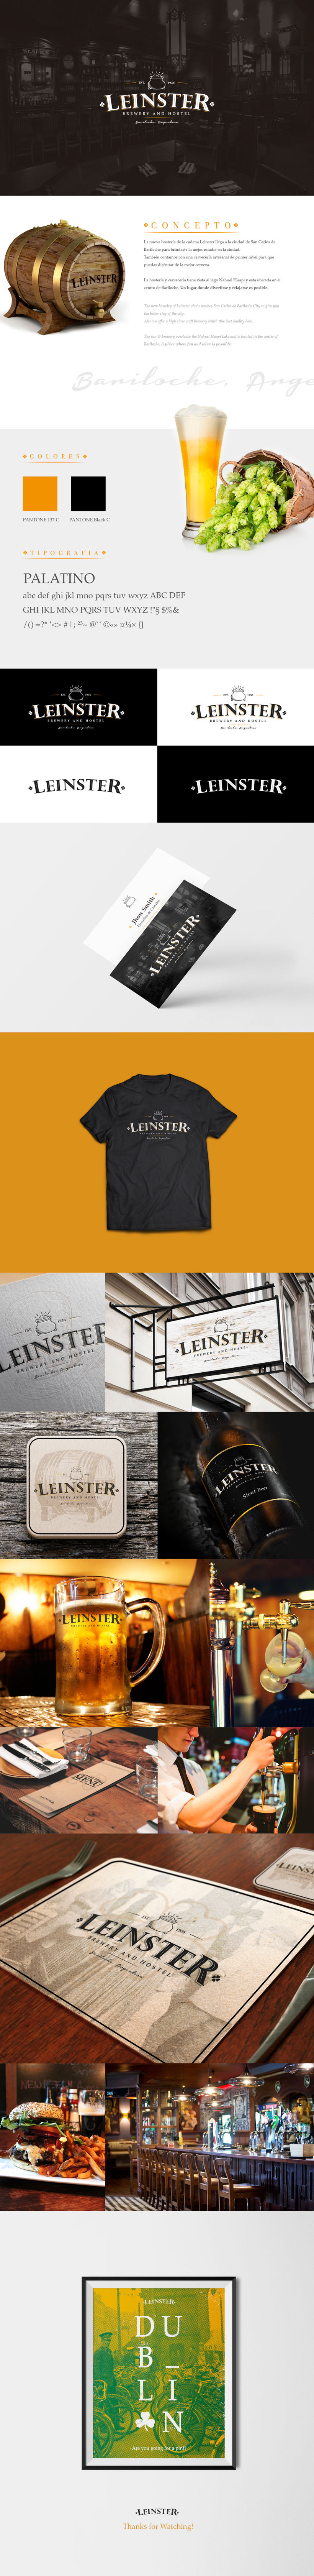 Leinster "Brewery n' Hostel" -1